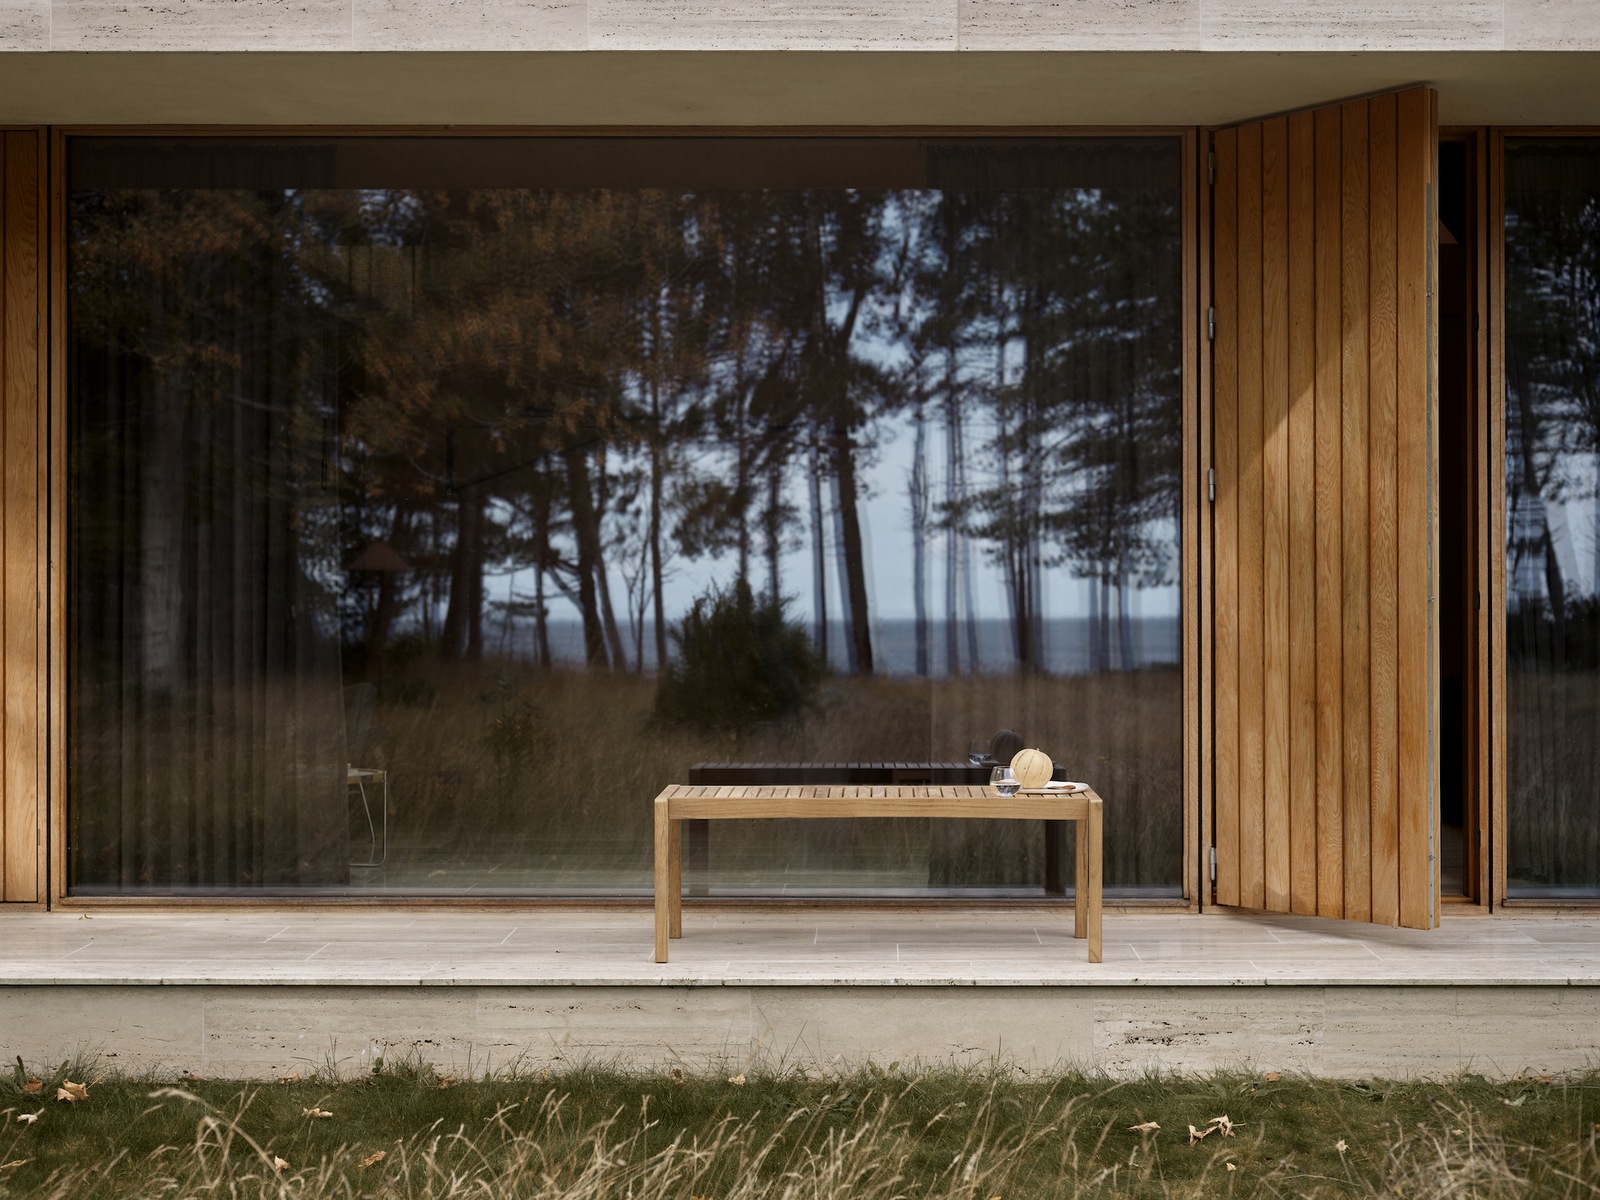 Exteriorshot: eine Holzbank ohne Rückelehne steht vor einem Bodentiefen Panaoramafenster.